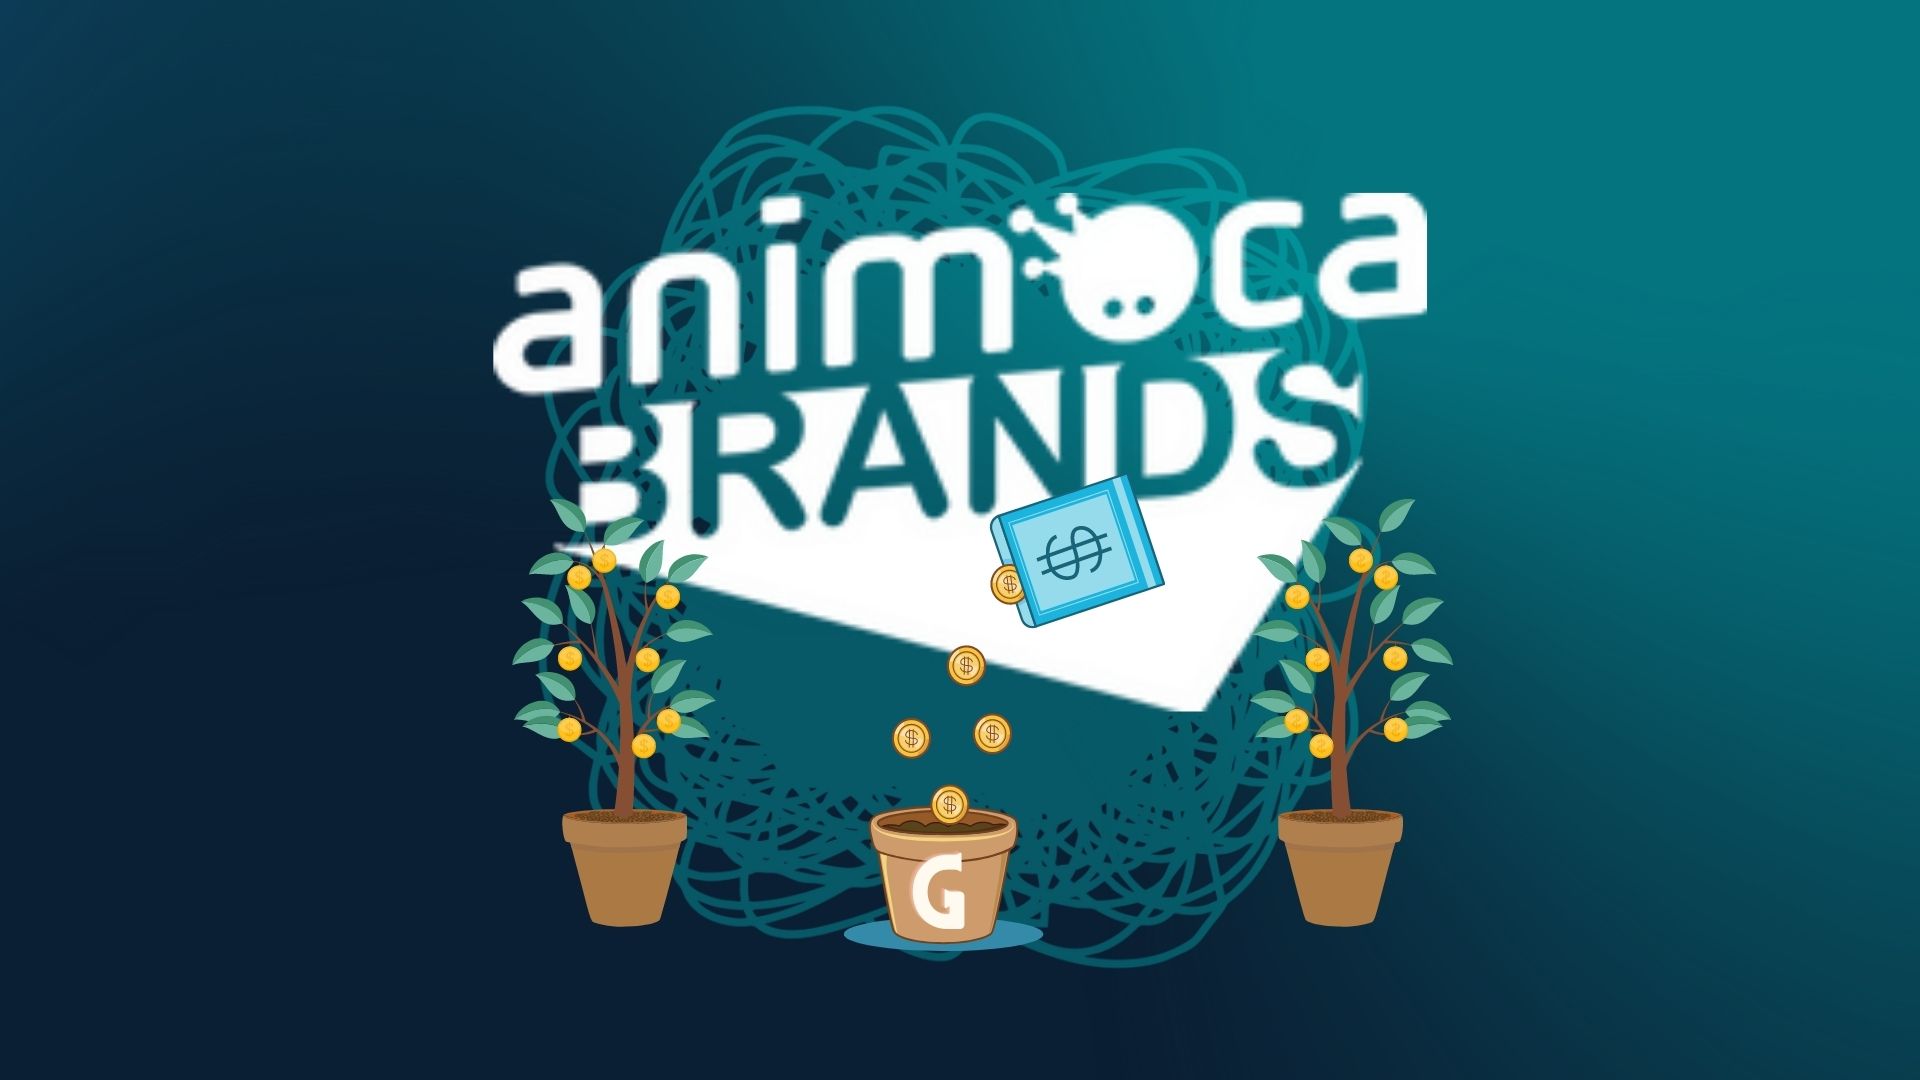 Animoca Brands профинансирует развитие P2E гильдий